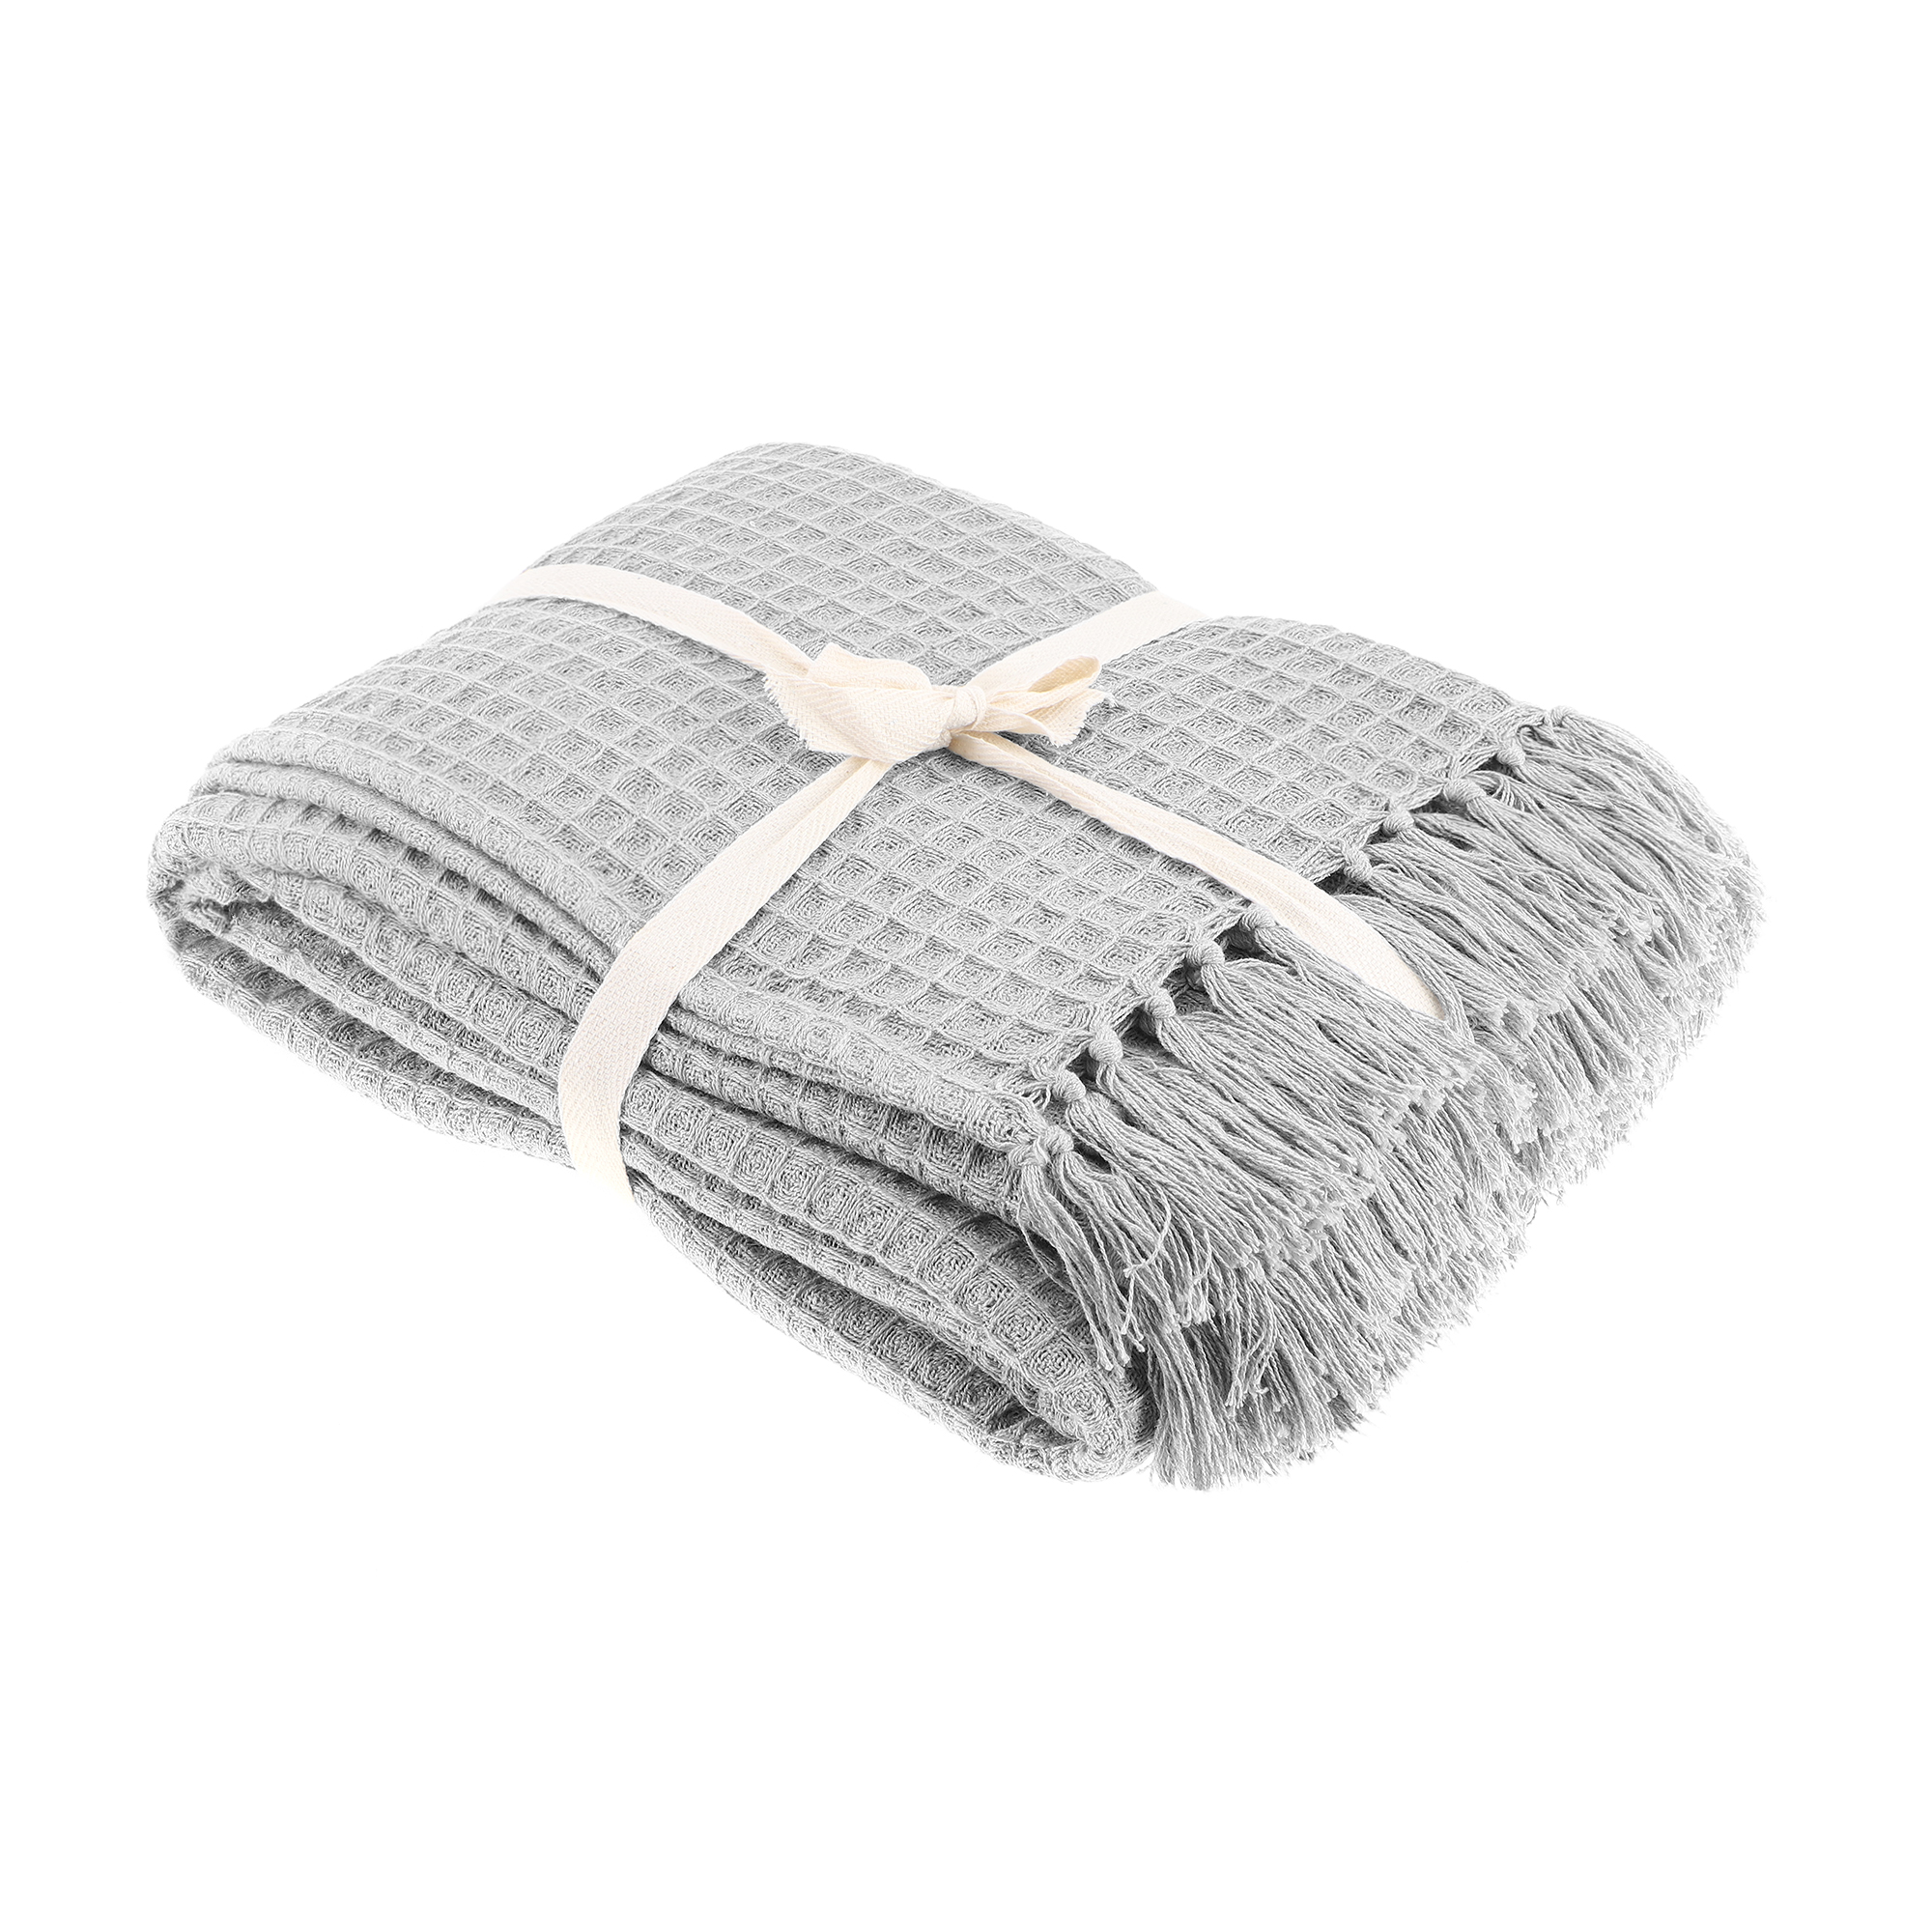 Плед вафельный Homelines textiles solid 180x200cm grey, цвет серый - фото 1